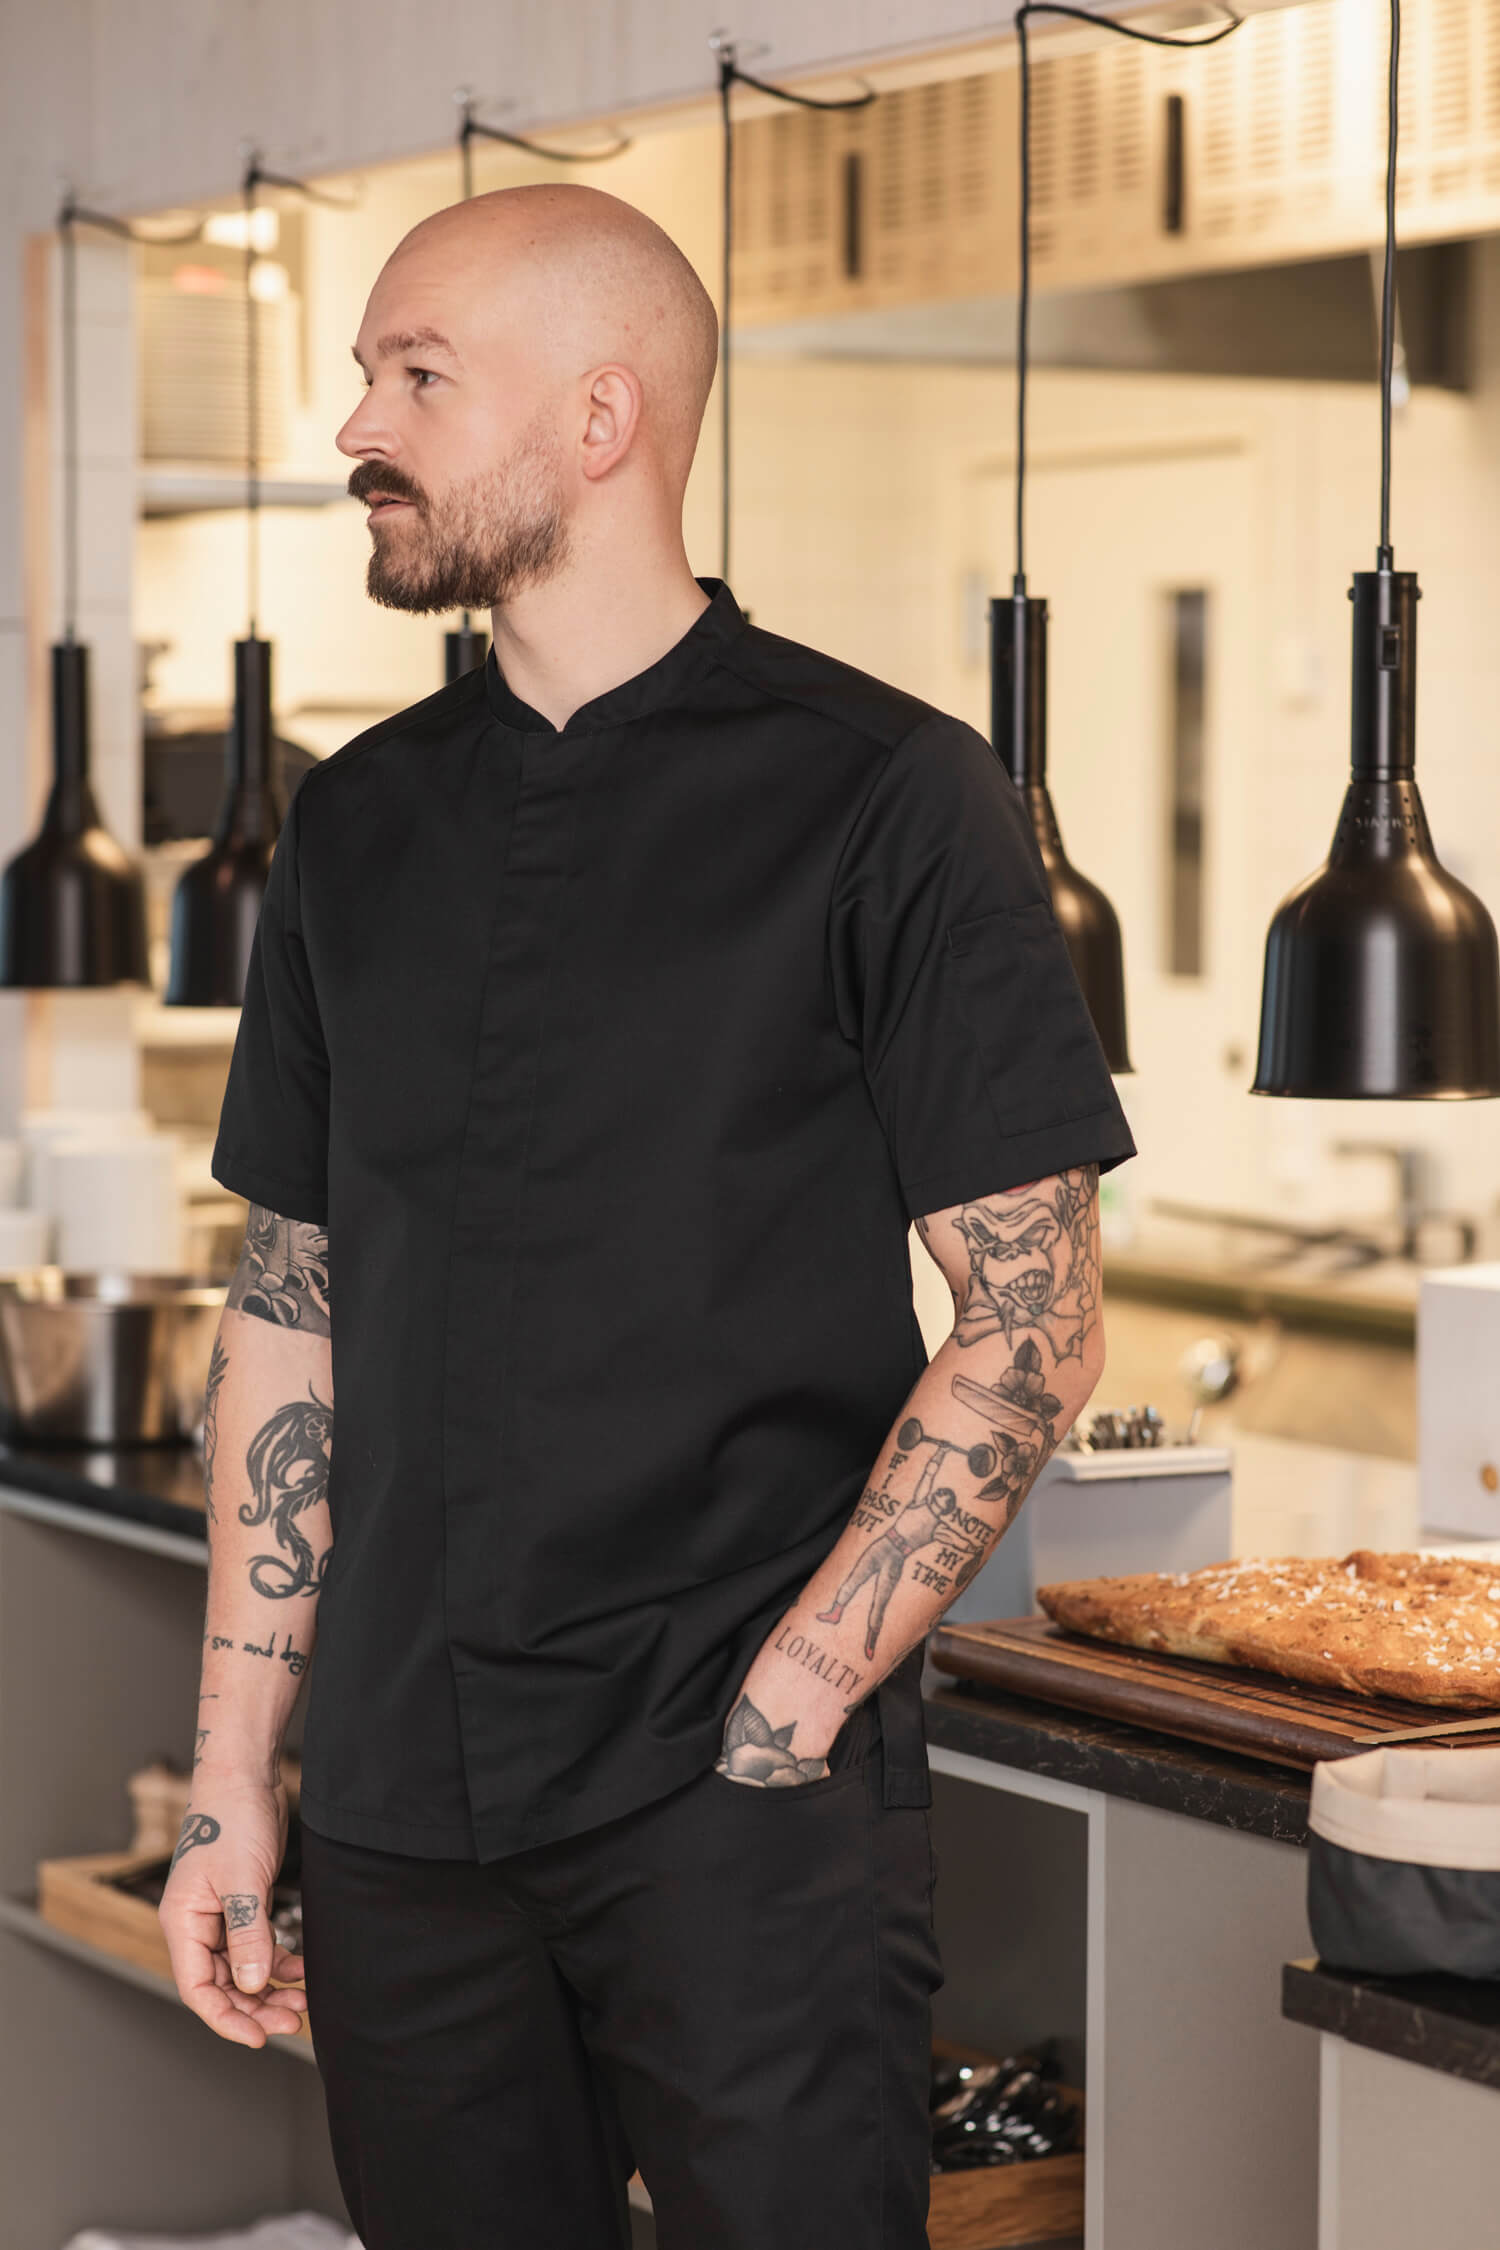  Kock med Segers nya kockrock modell 1097 står i ett modernt kök med armar prydda av tatueringar.